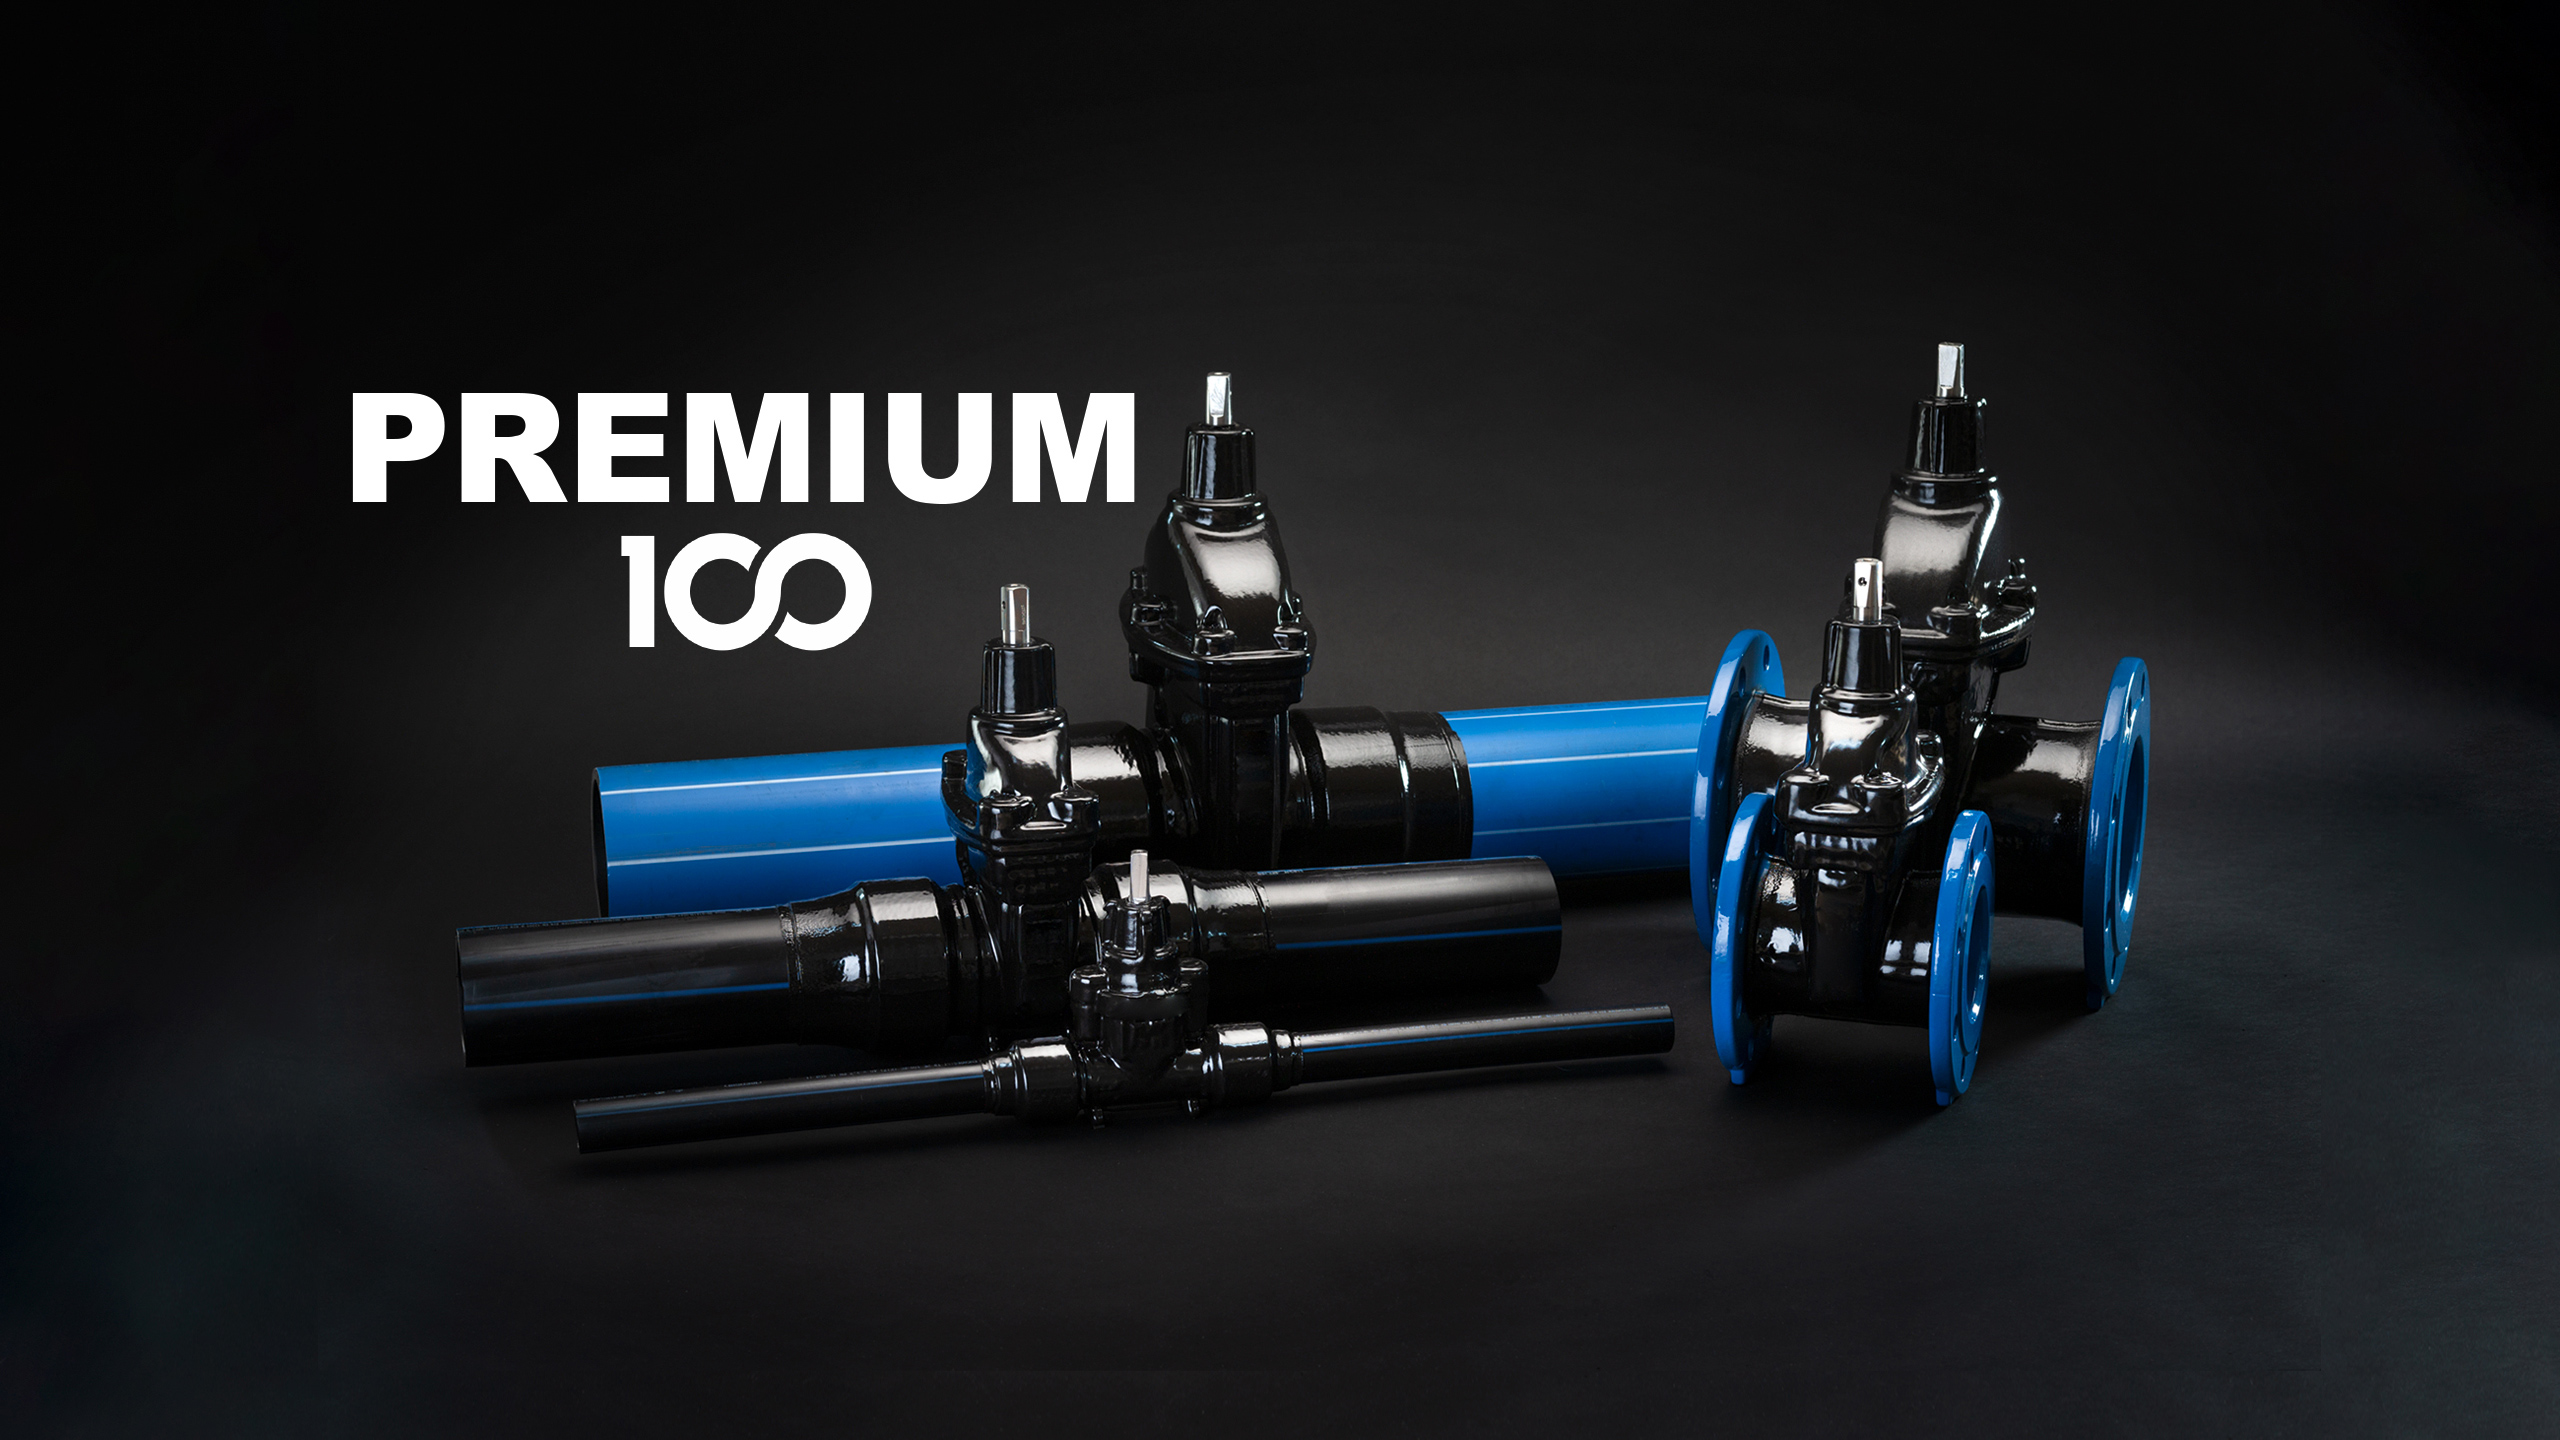 AVK Premium 100 gate valves